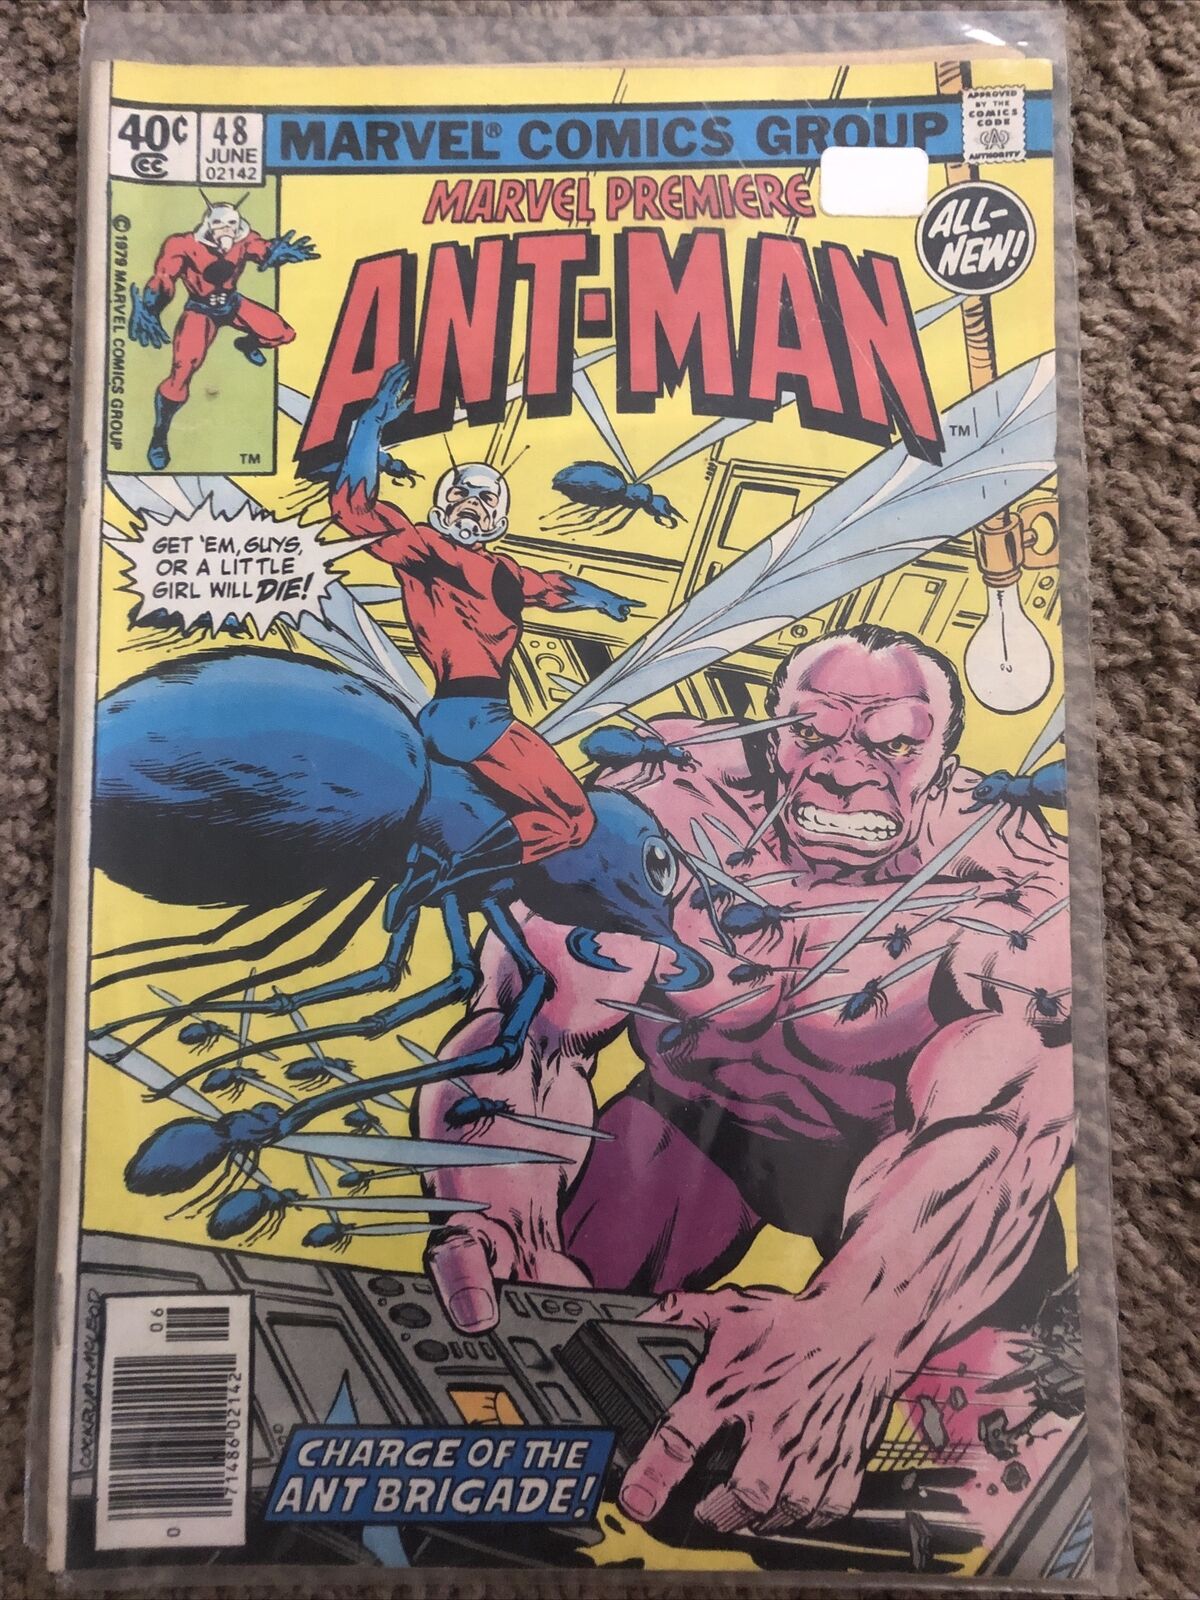 Ant-Man Vol 1 No 48 June 1979